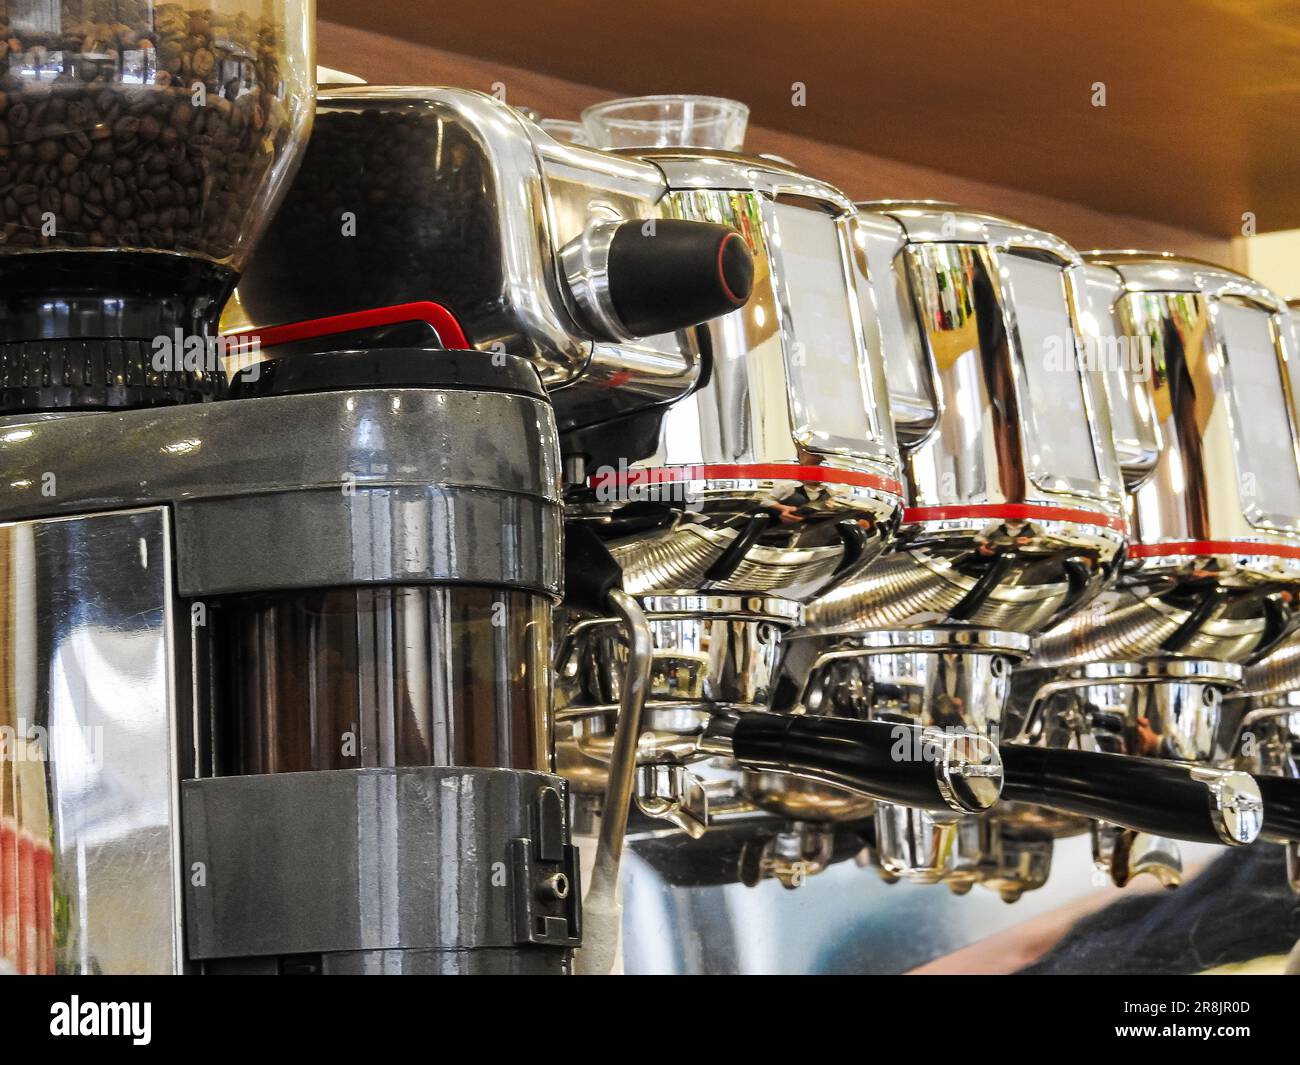 Une machine à espresso italienne traditionnelle et un moulin à café sont prêts à l'emploi. Personne n'est en train de mettre l'accent sur les outils du commerce Banque D'Images